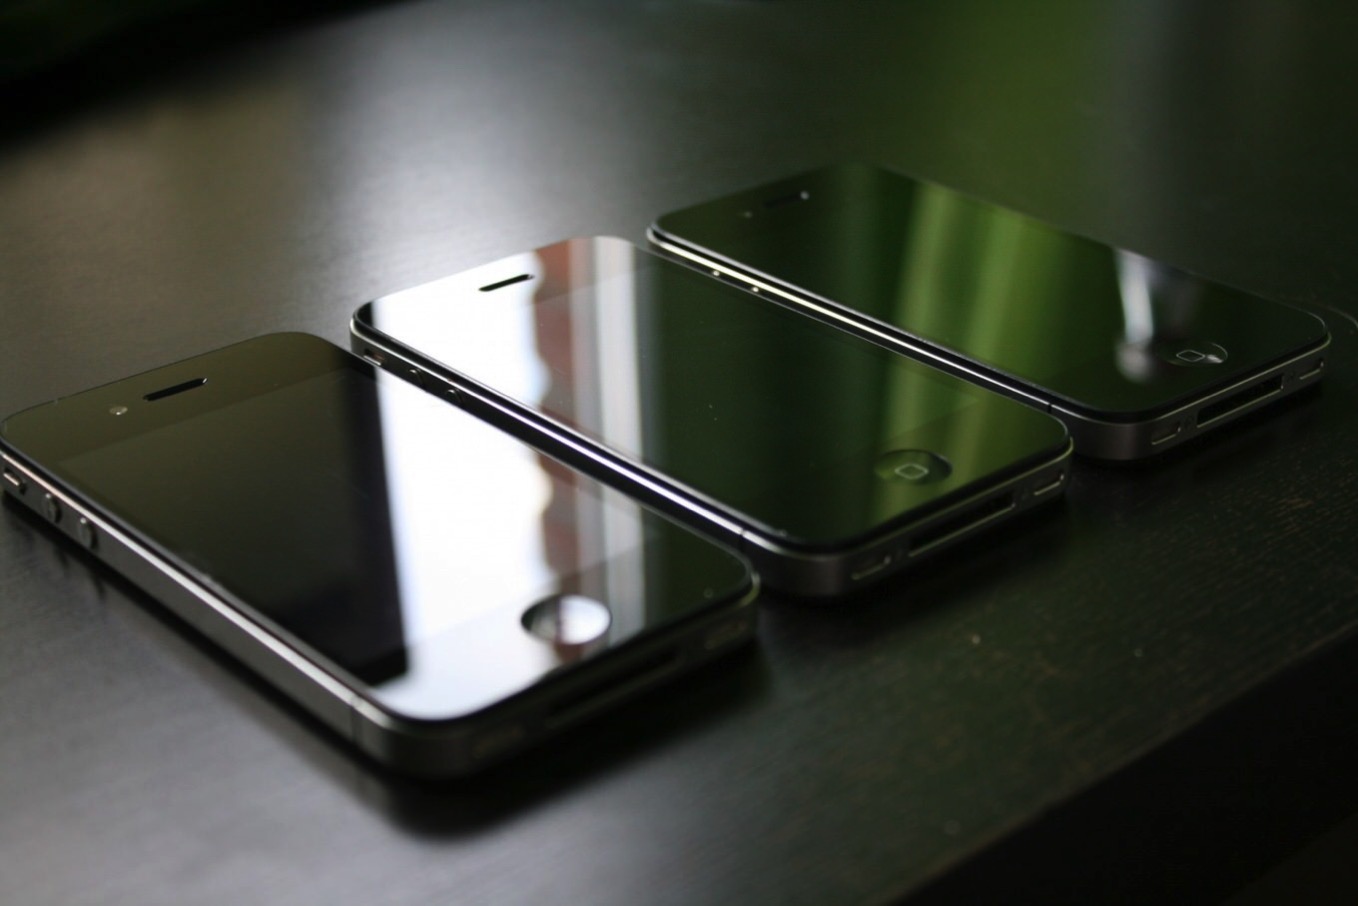 名機「iPhone 4」のボディが復活!? 次期iPhoneはステンレス製で新デザインとなる可能性